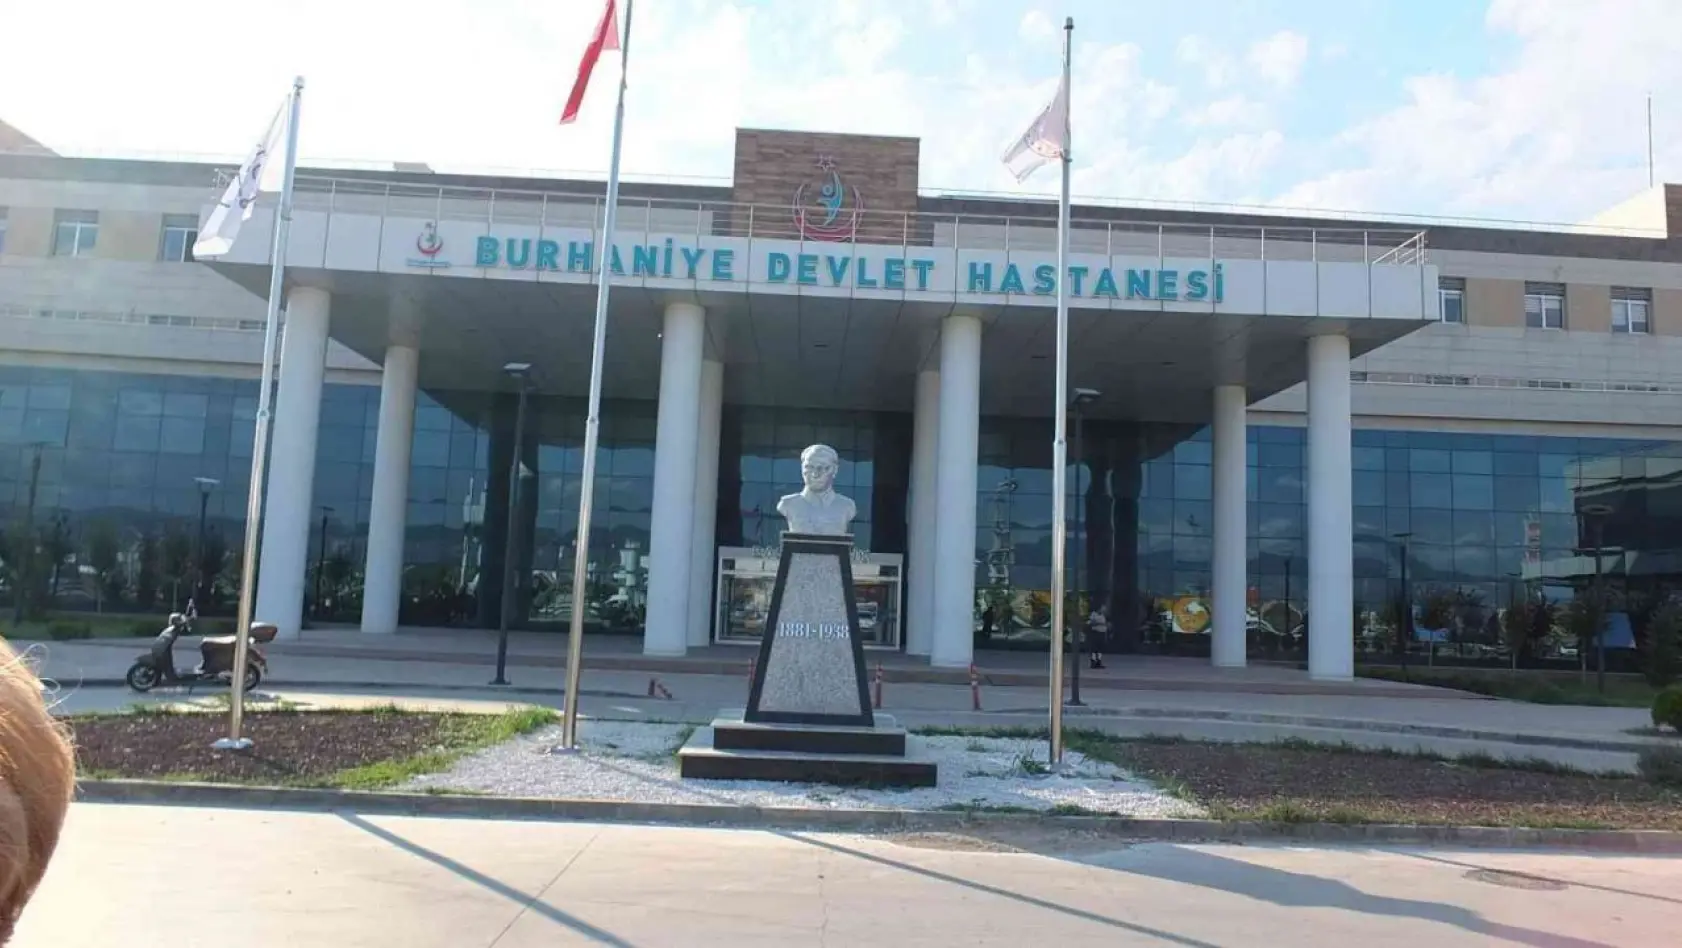 Burhaniye Devlet Hastanesinde protez yapımına başlandı